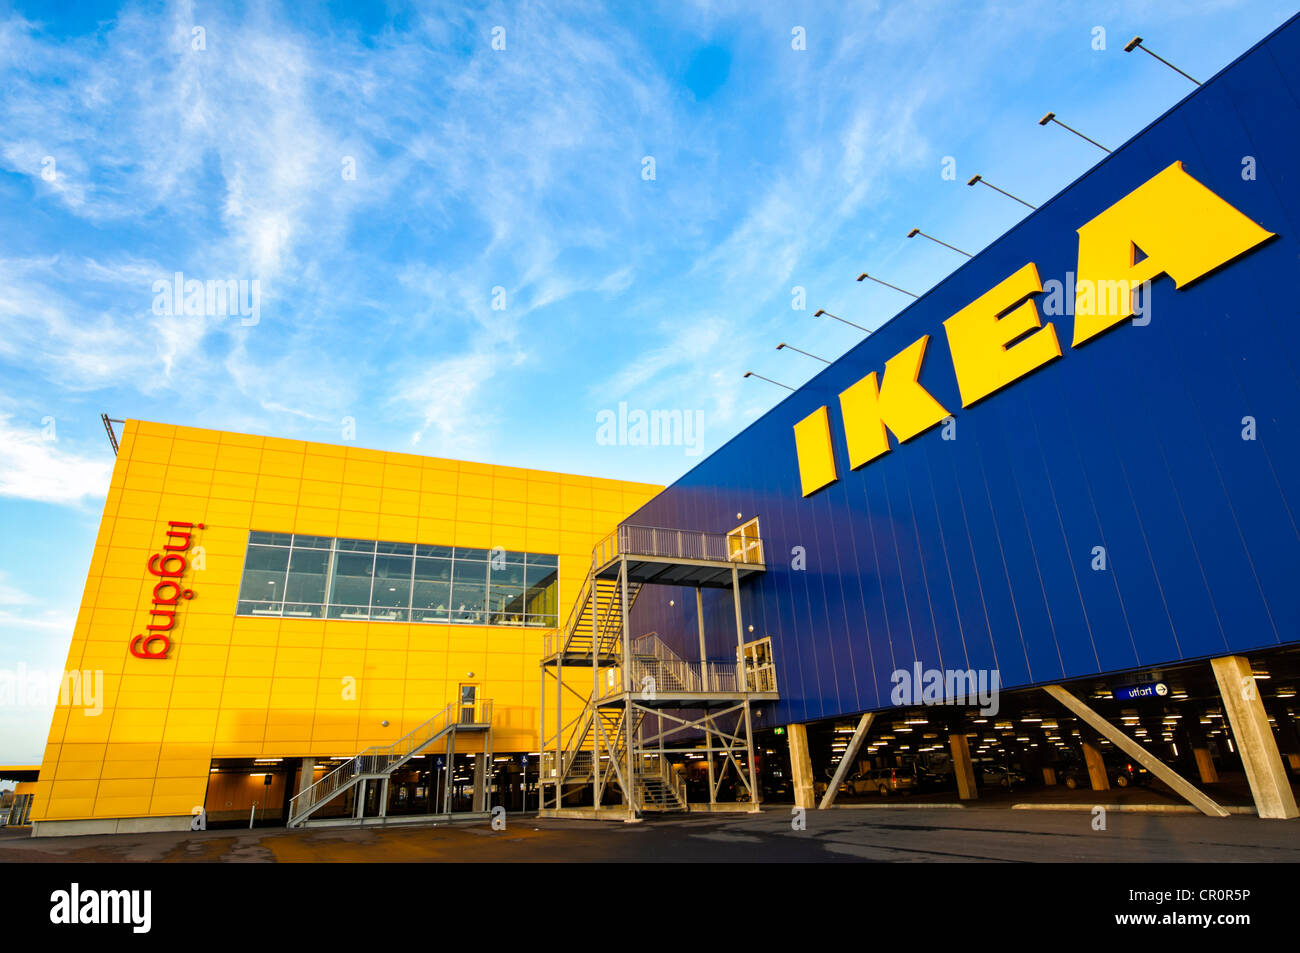 Magasin Ikea dans les pays, la Suède Banque D'Images